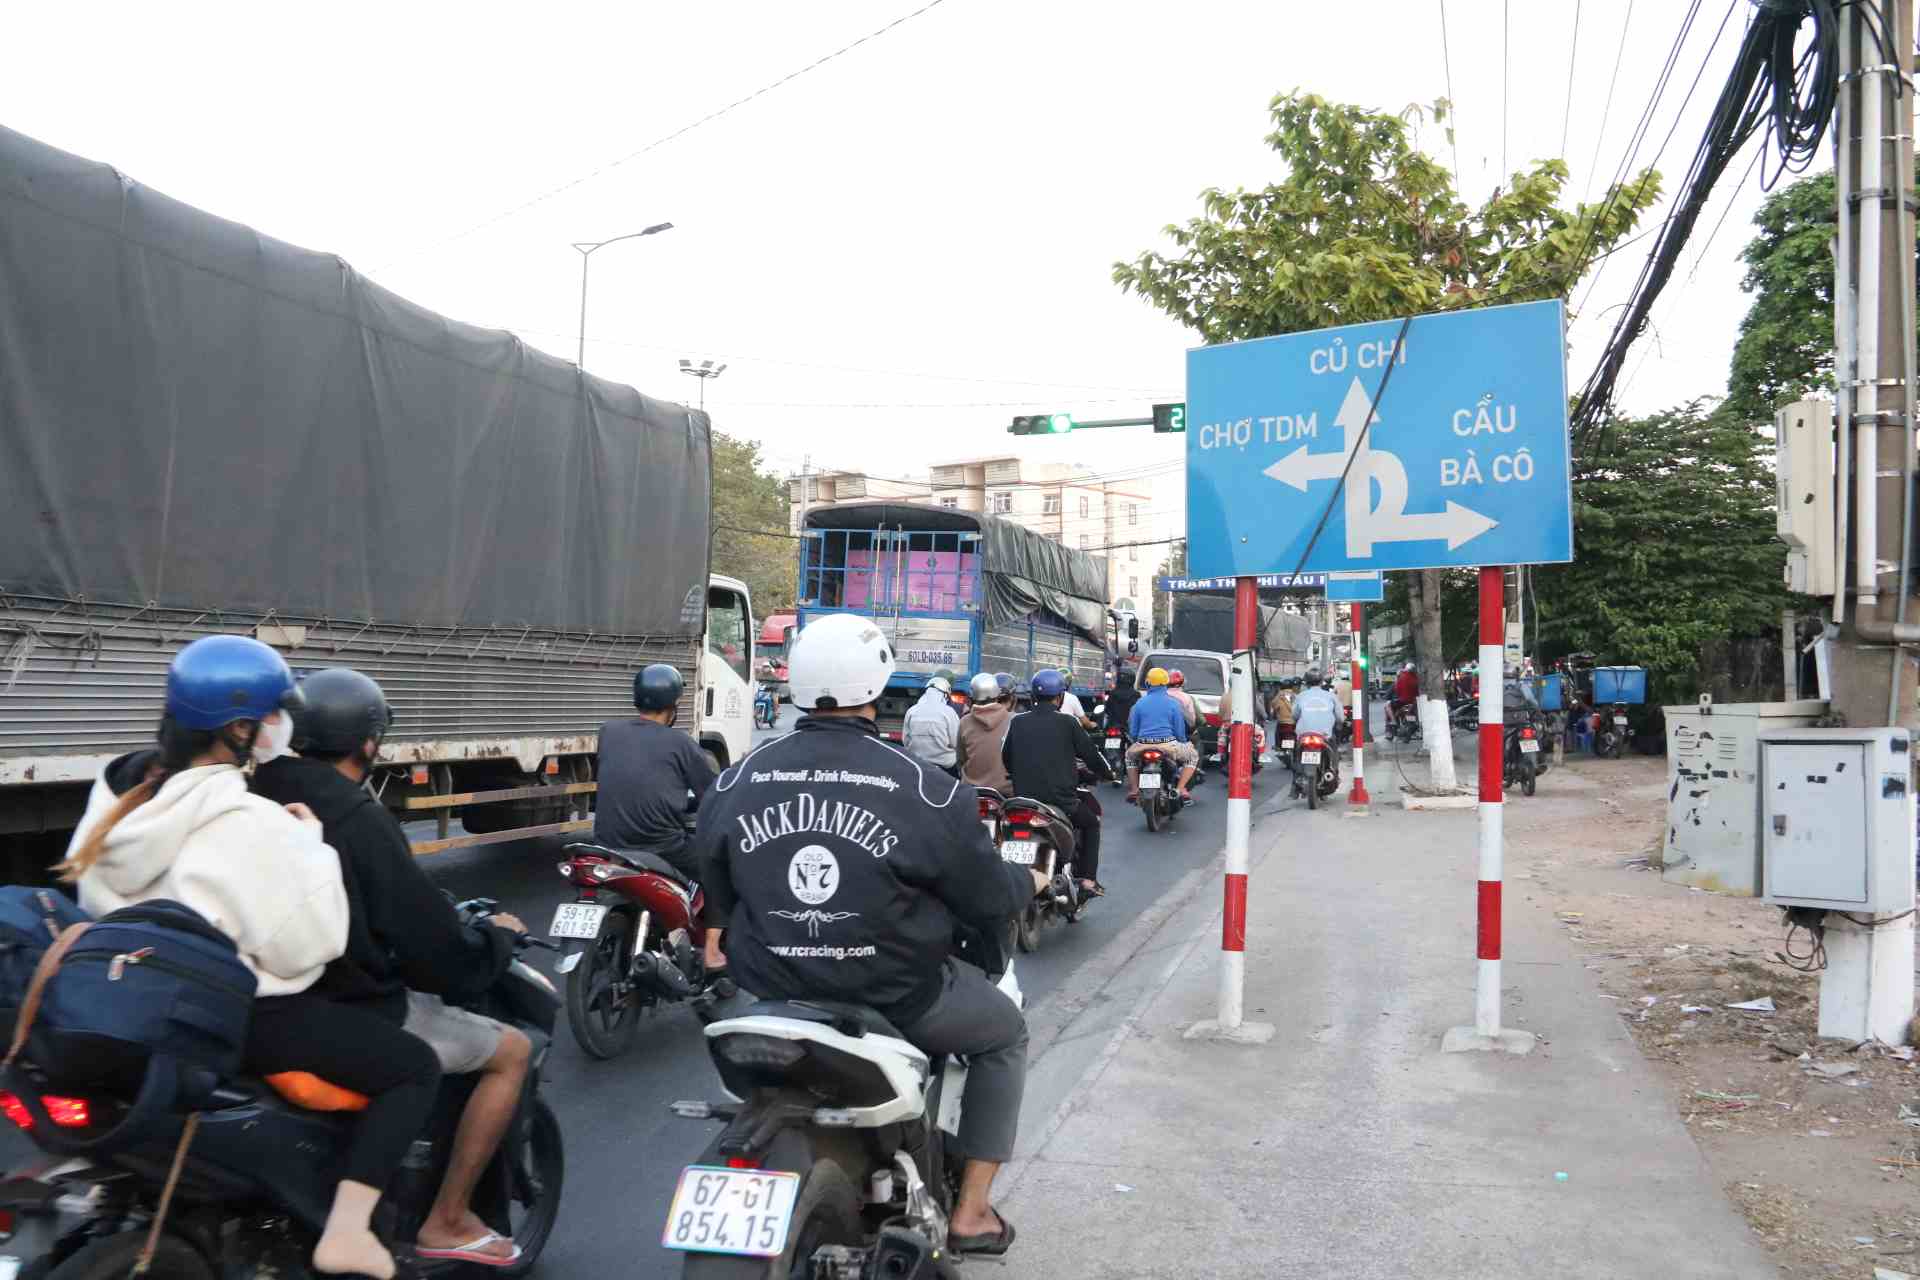 Sau khi tan ca, hàng chục ngàn người lao động đi xe máy bắt đầu đổ về hướng cầu Phú Cường qua huyện Củ Chi, Thành phố Hồ Chí Minh để về các tỉnh miền Tây.